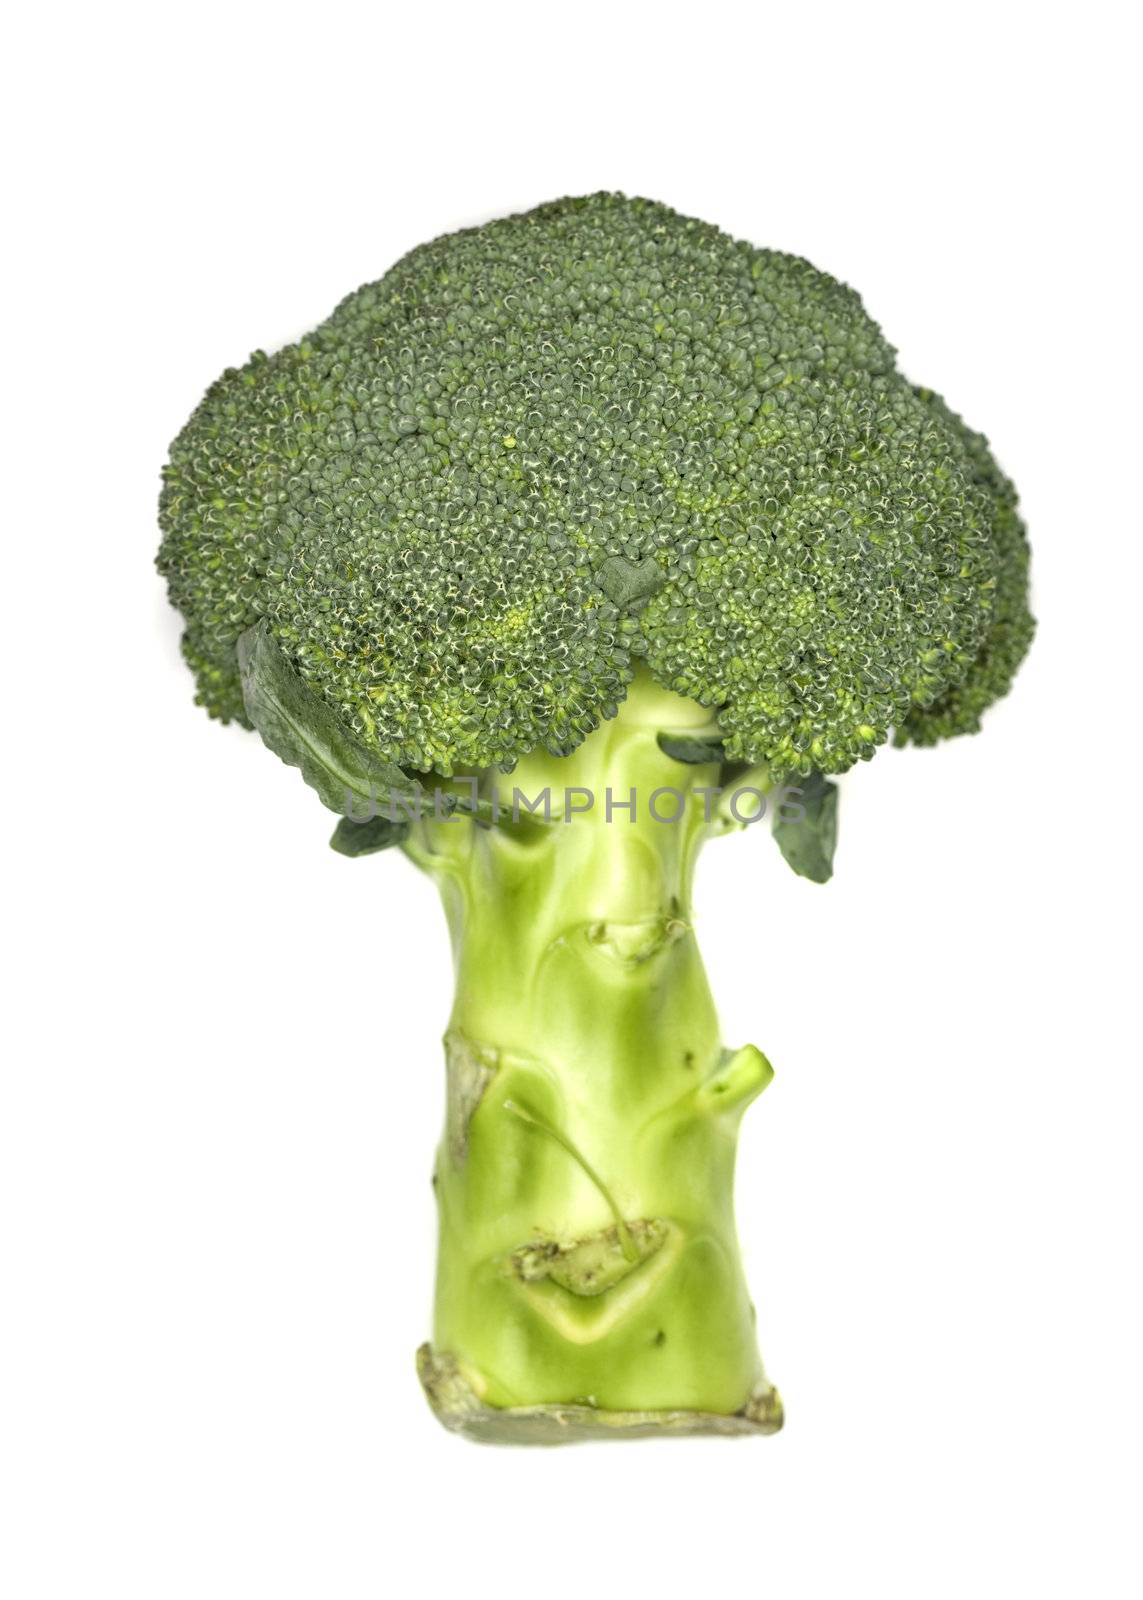 Fresh broccoli by gemenacom